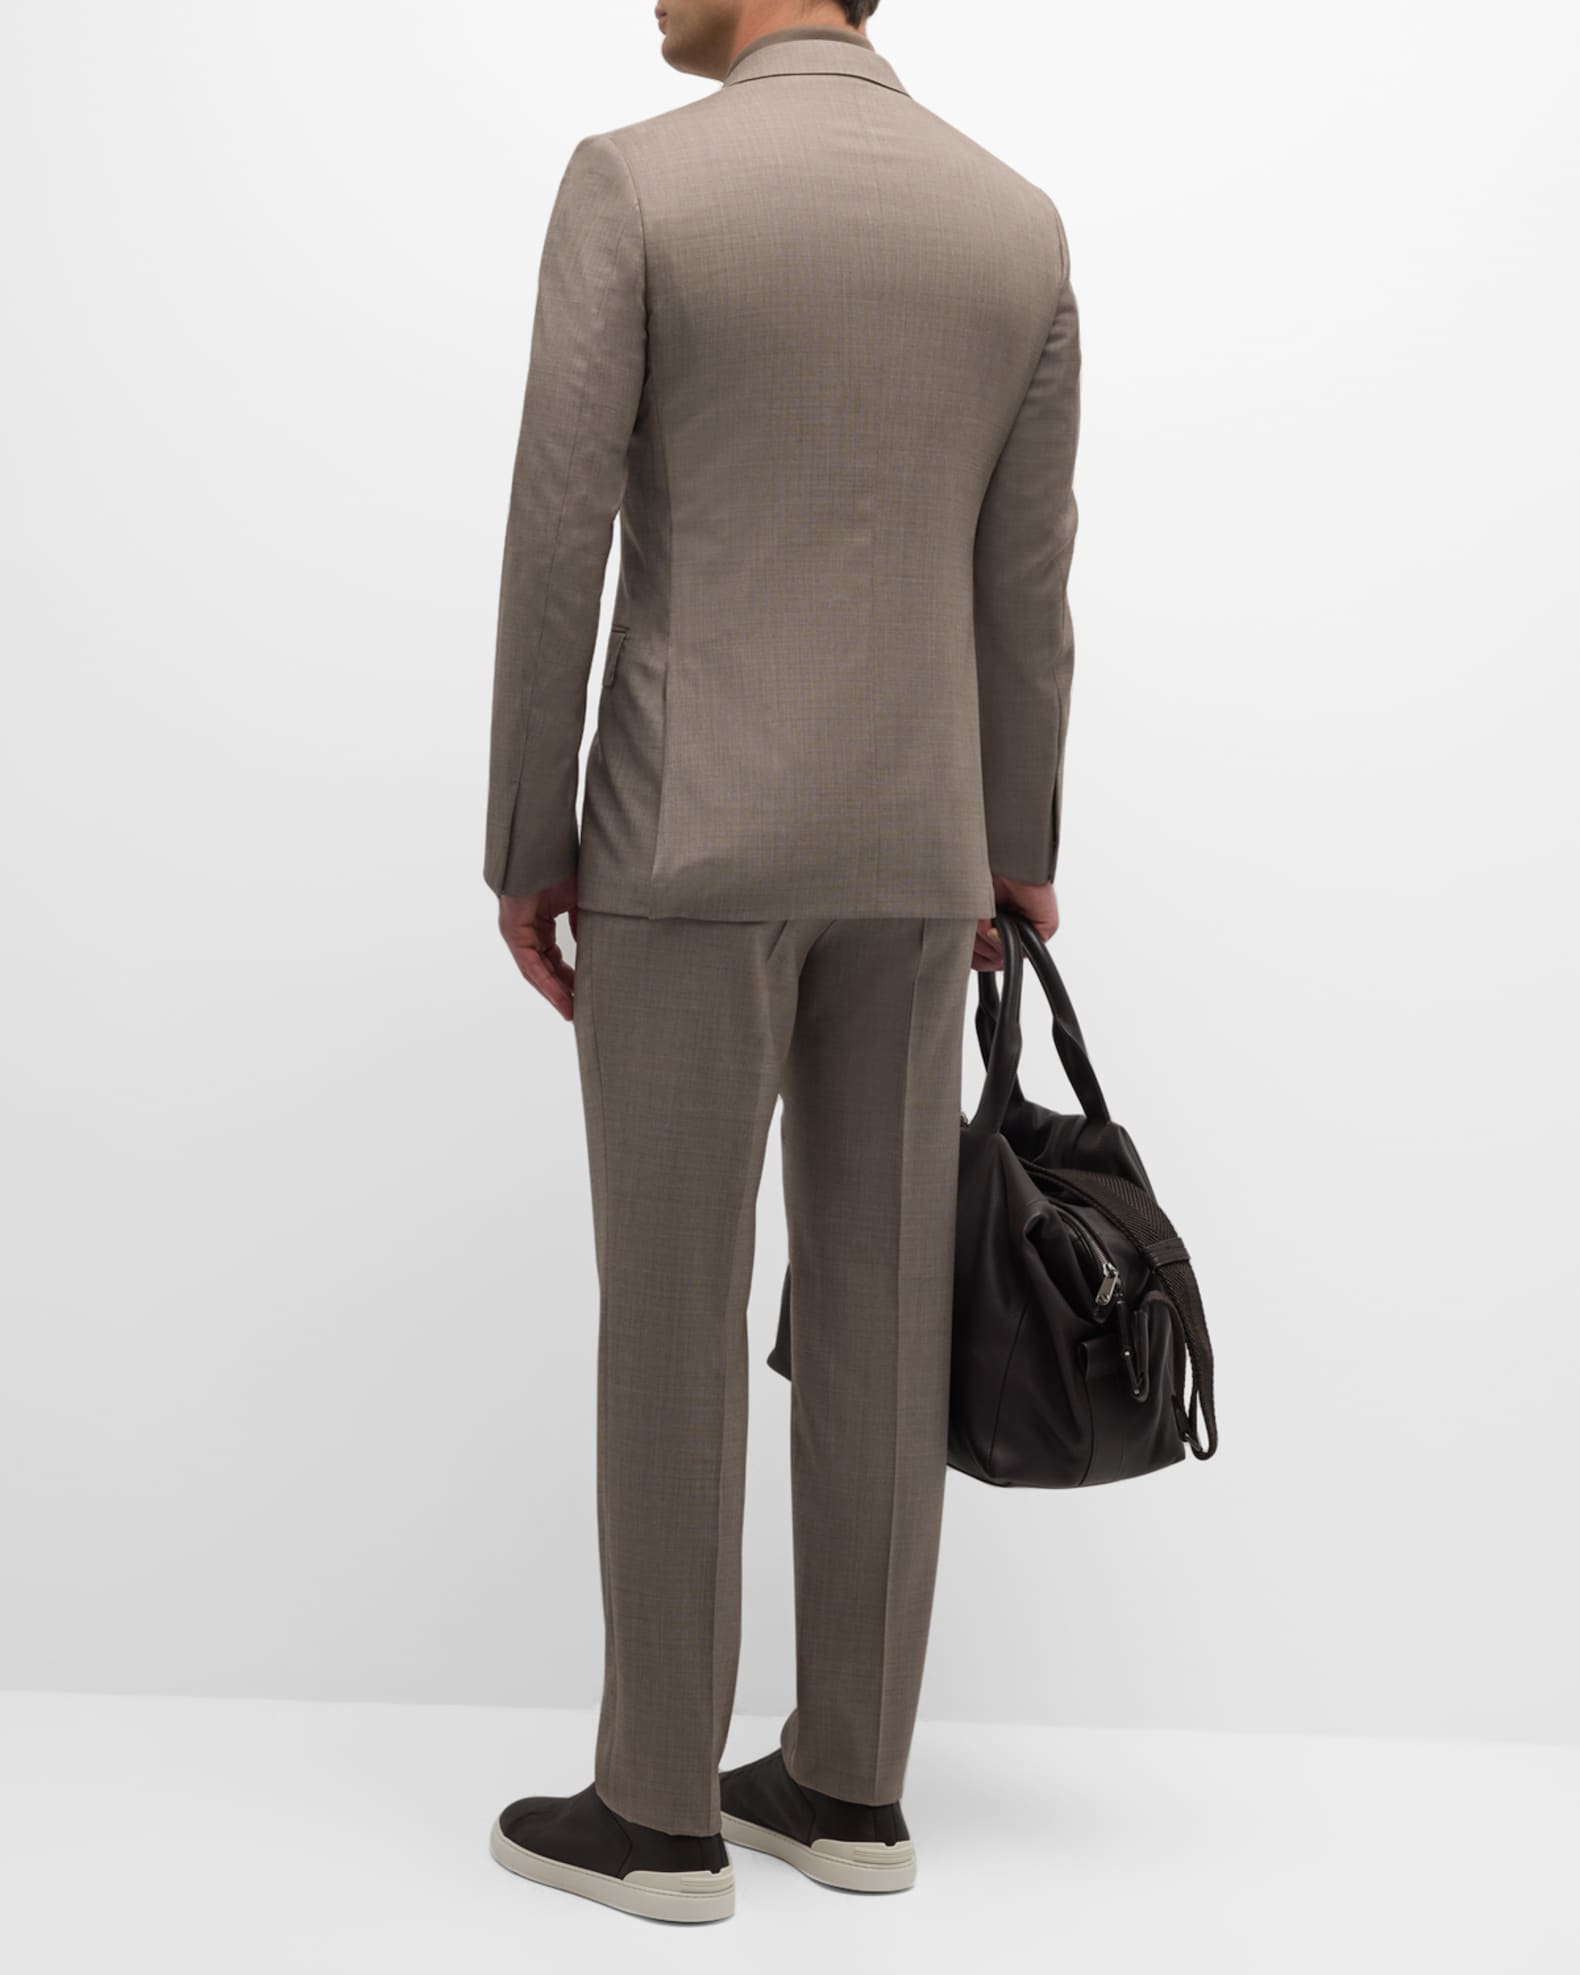 ZEGNA Men's Wool Sharkskin Suit | Neiman Marcus